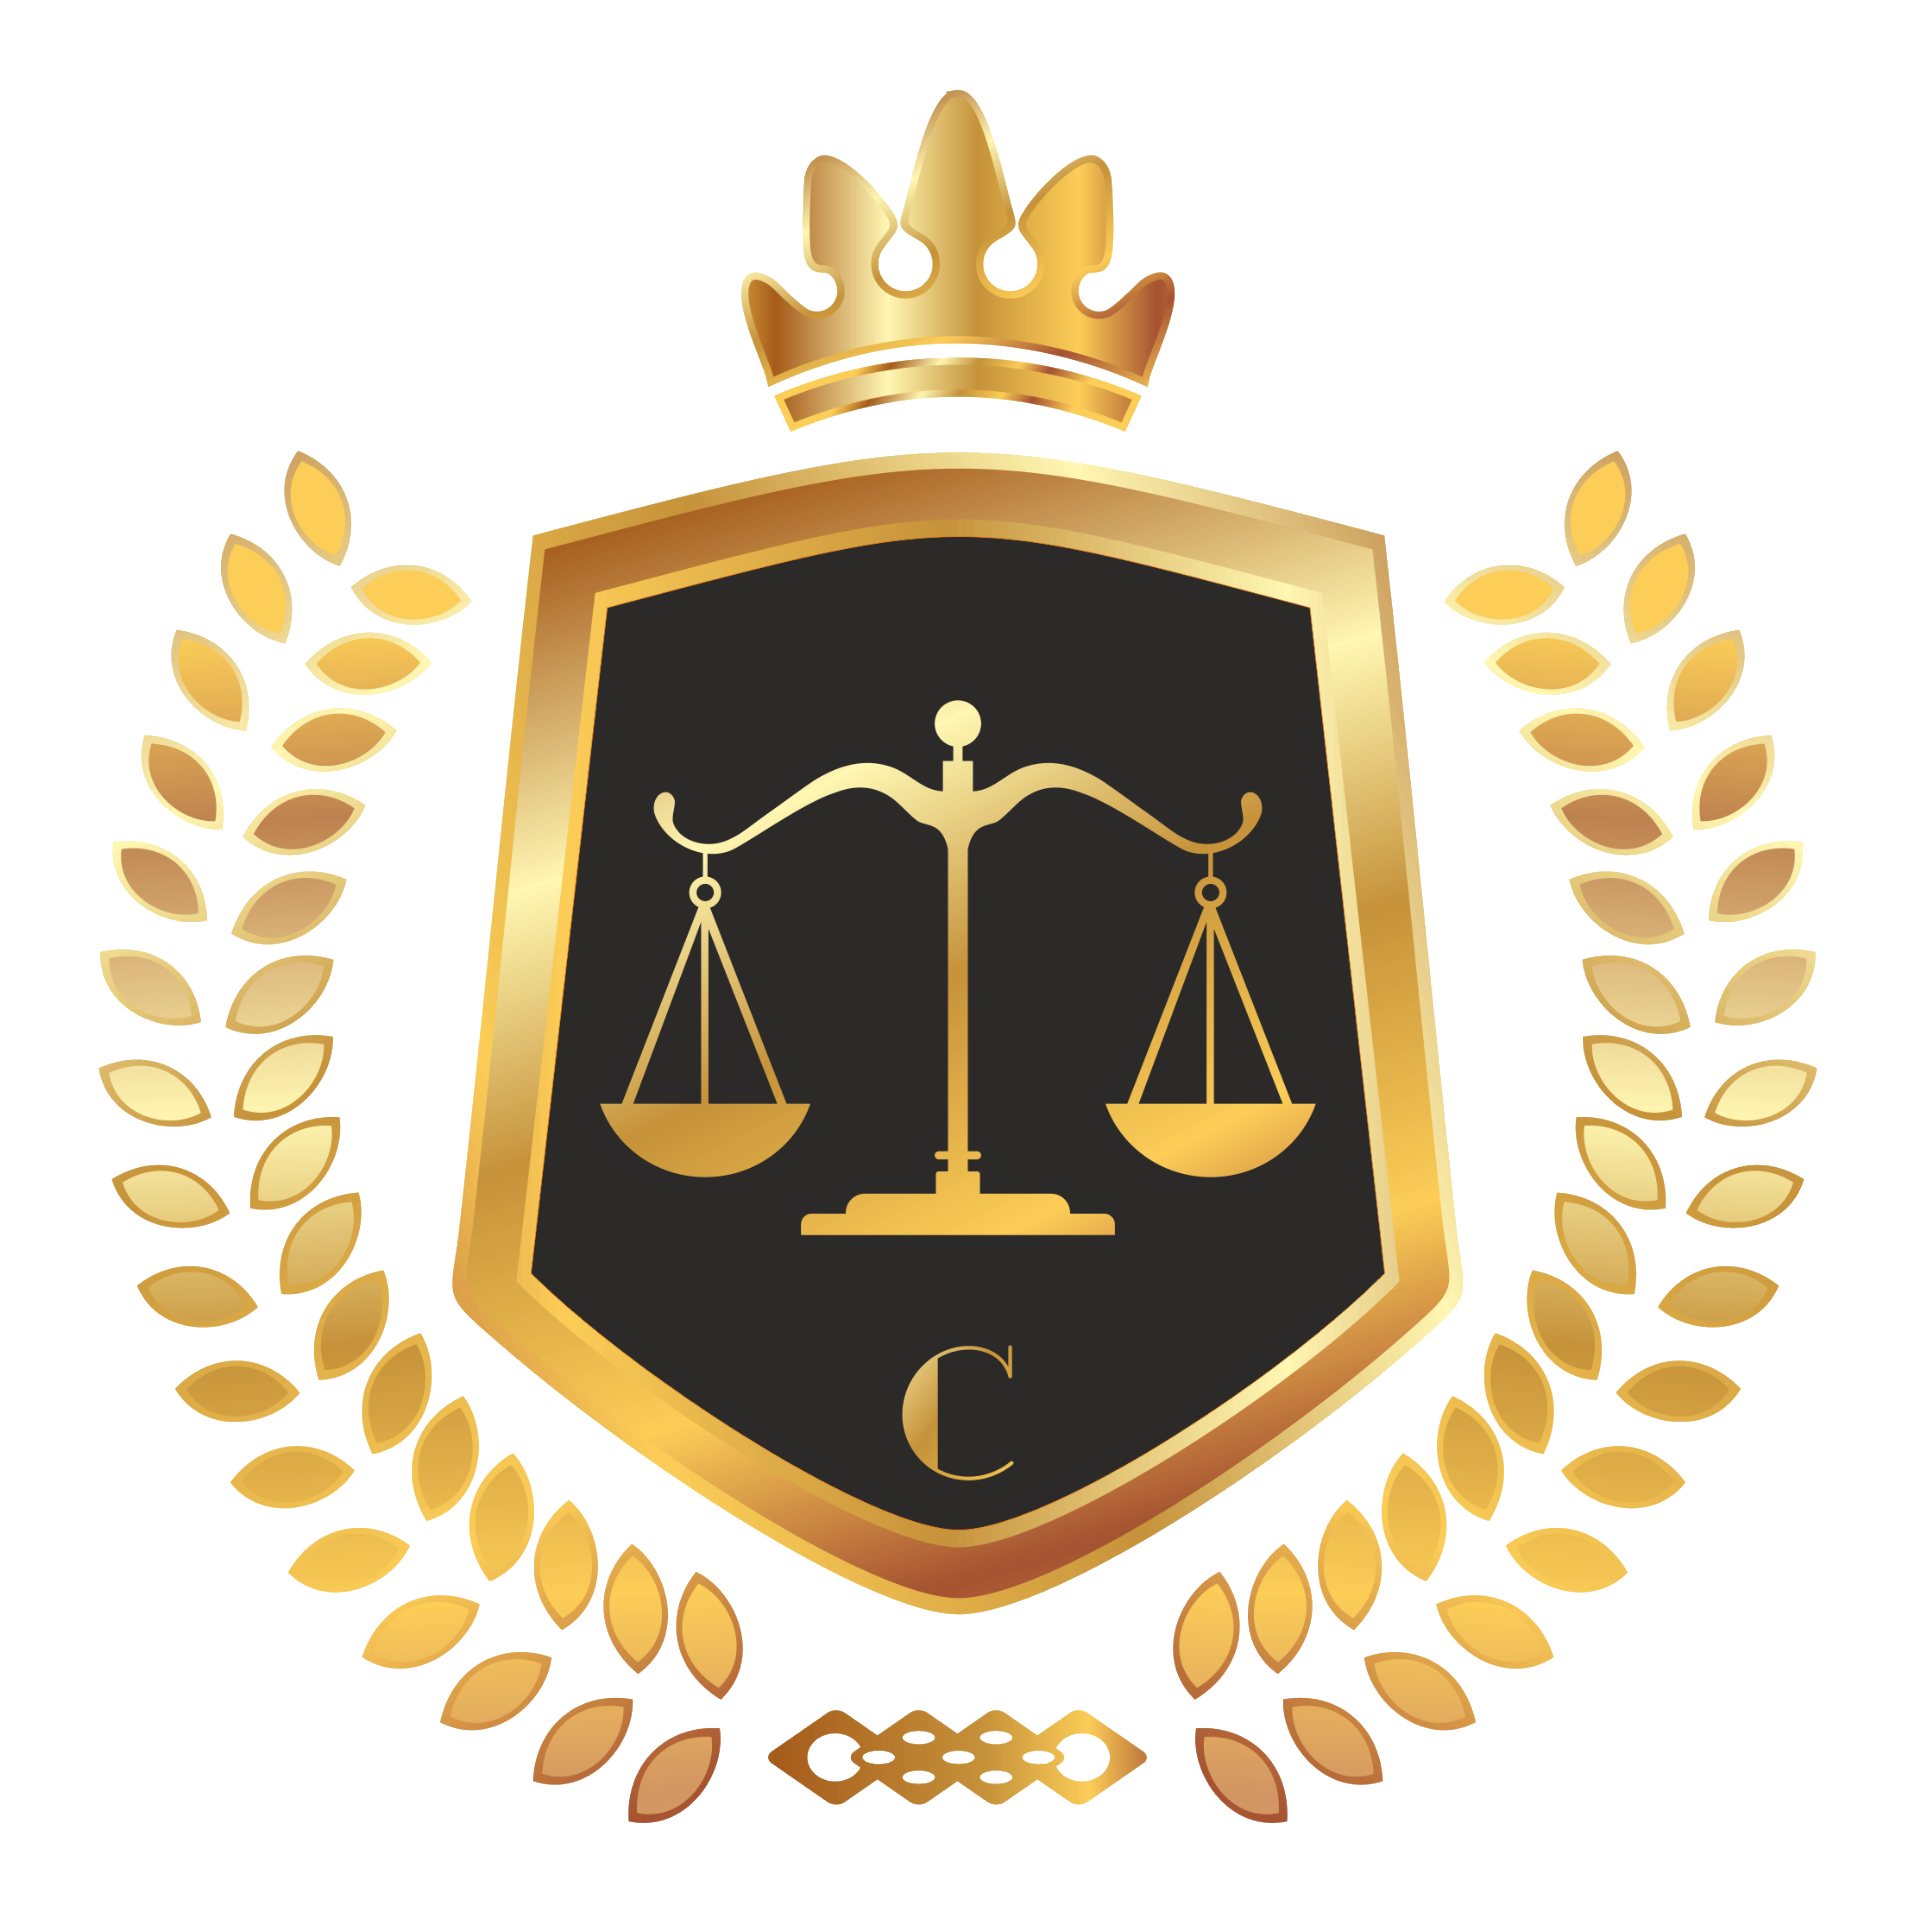 Сайт юридической компании. Юридические услуги. Юридические эмблемы. Юридические услуги логотип. Правовая организация сайта